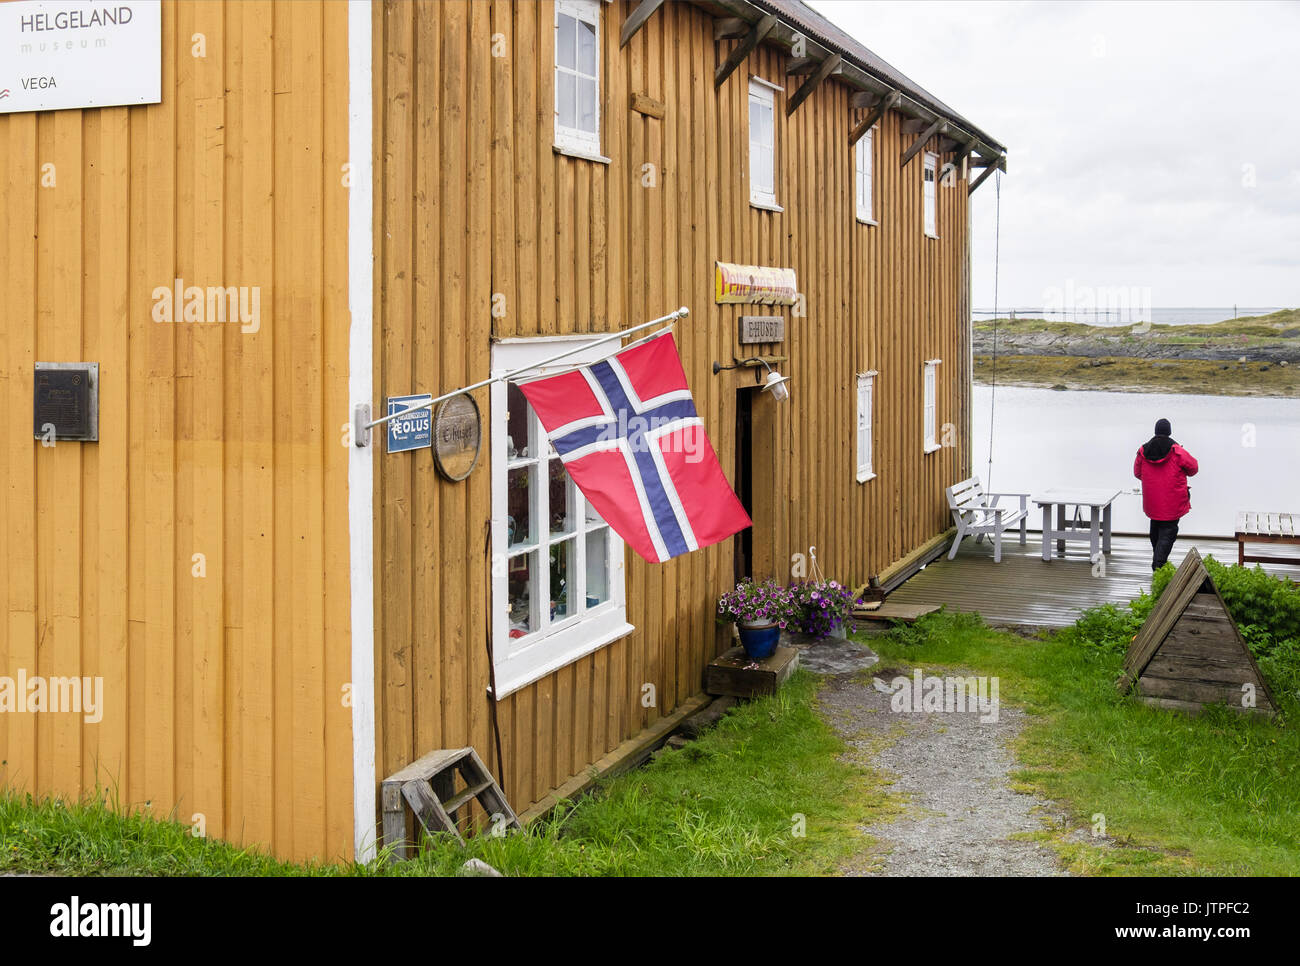 Musée Helgeland a affiche d'Eider de récolte vers le bas dans un bâtiment en bois. Nes, Vega Island, Nordland, Norvège, Scandinavie Banque D'Images